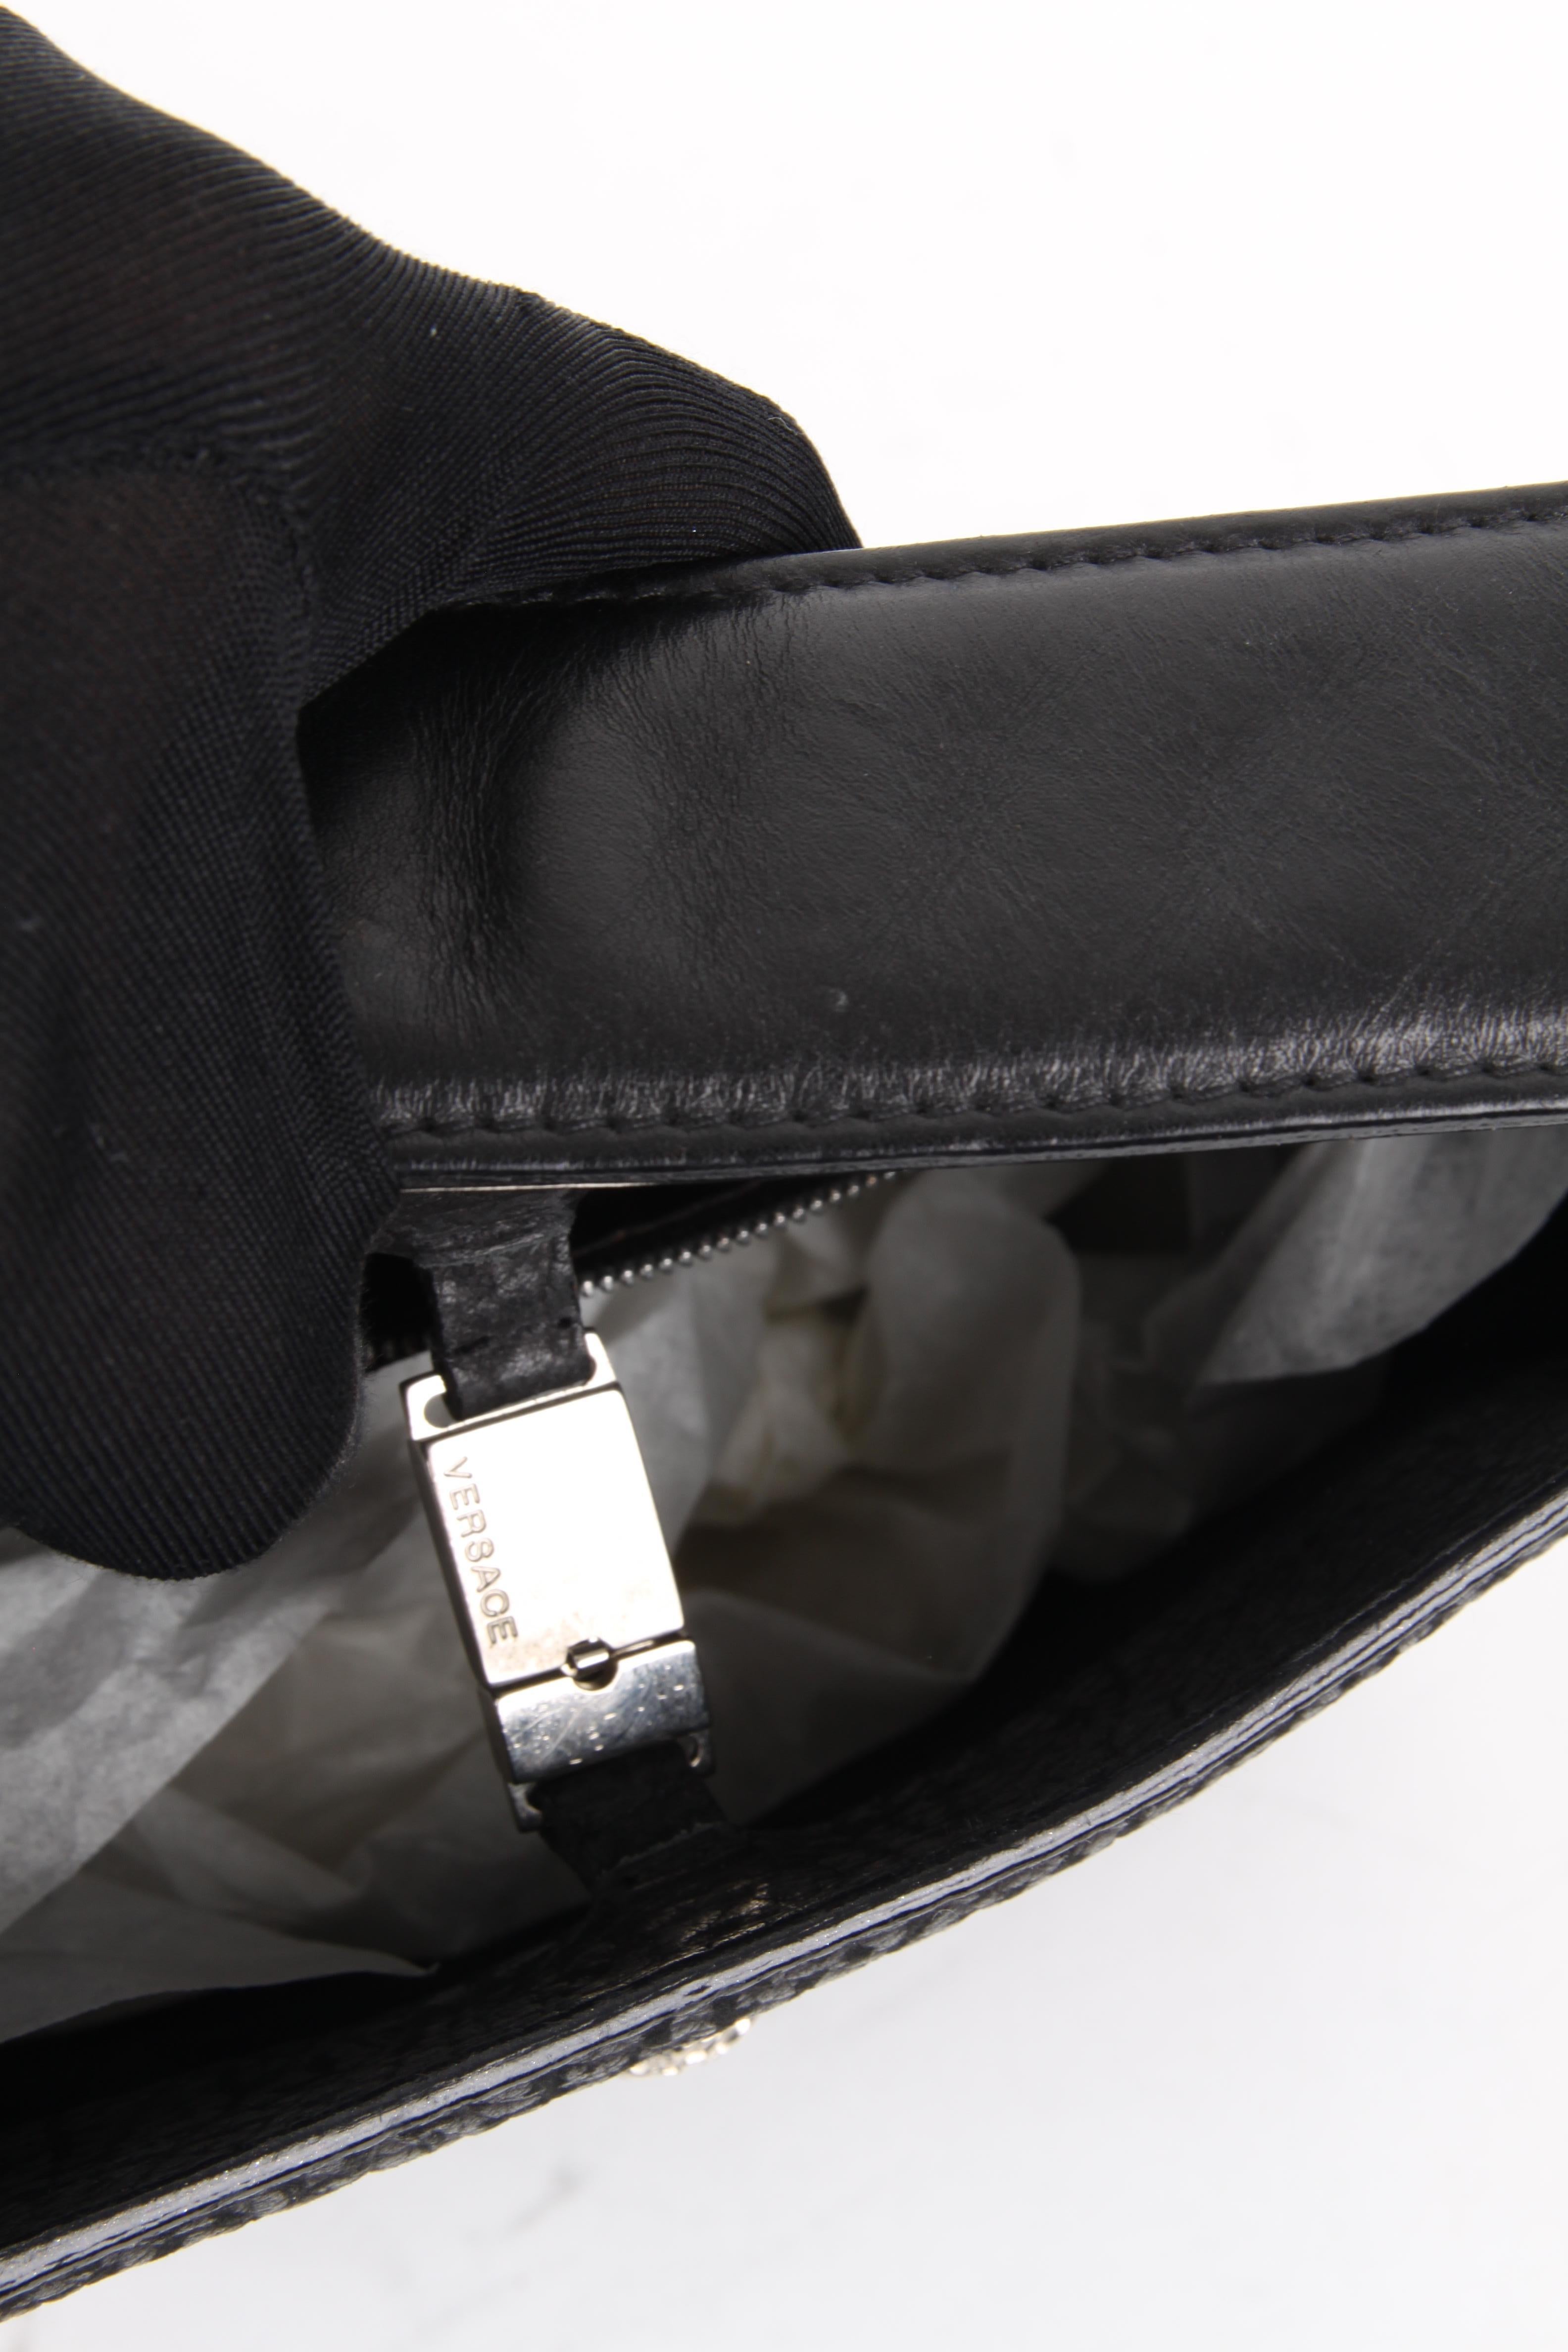 Gianni Versace Black Silver Leather Shoulder Bag For Sale 4